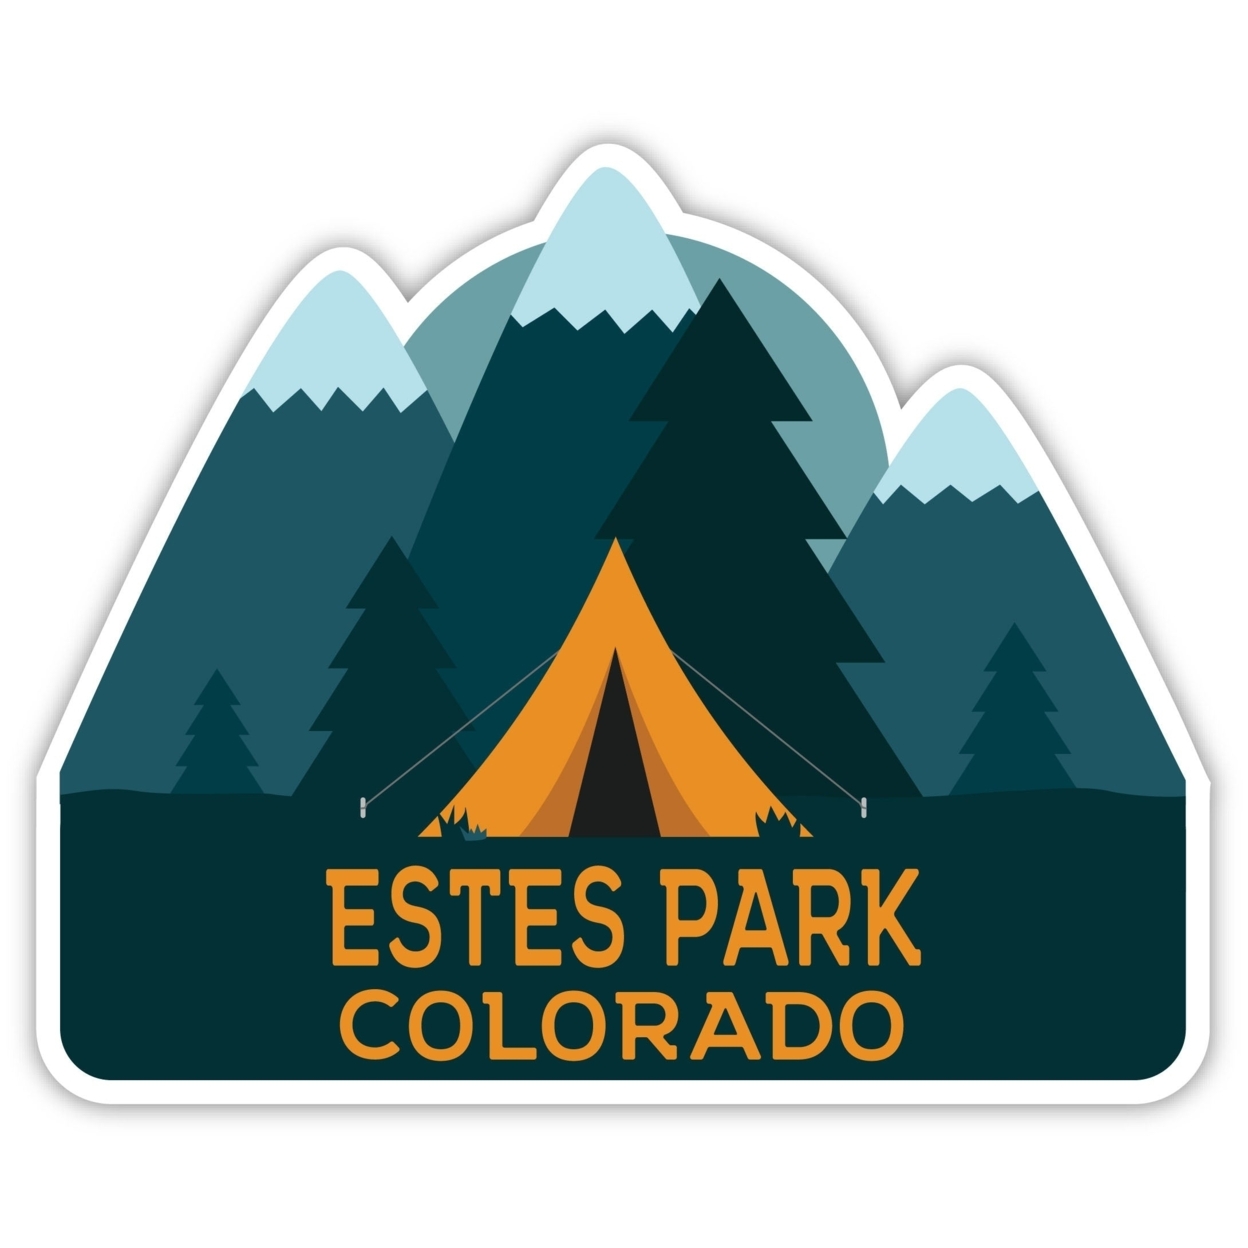 Estes Park Colorado Souvenir Decorative Stickers (Choose Theme And Size) - 4-Pack, 8-Inch, Bear